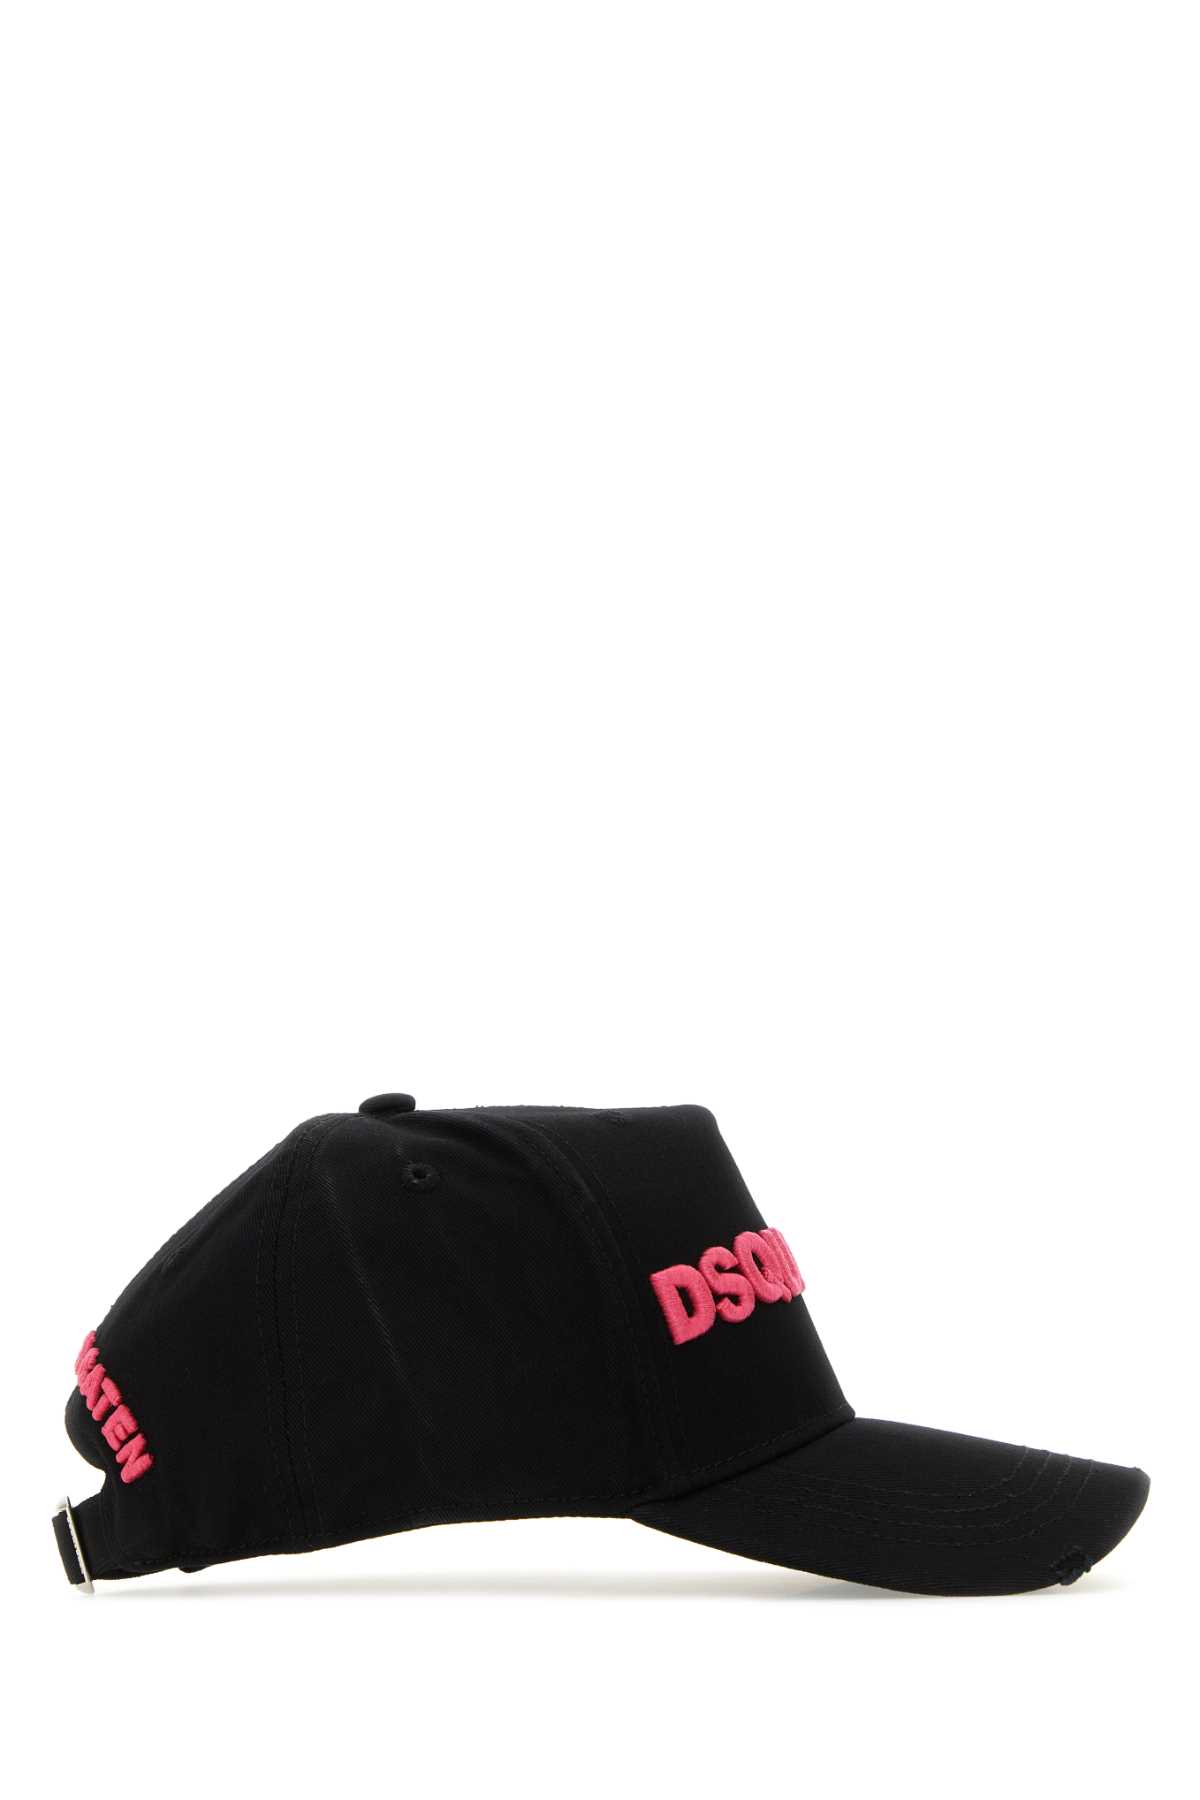 DSQUARED2 BLACK COTTON BASEBALL CAP